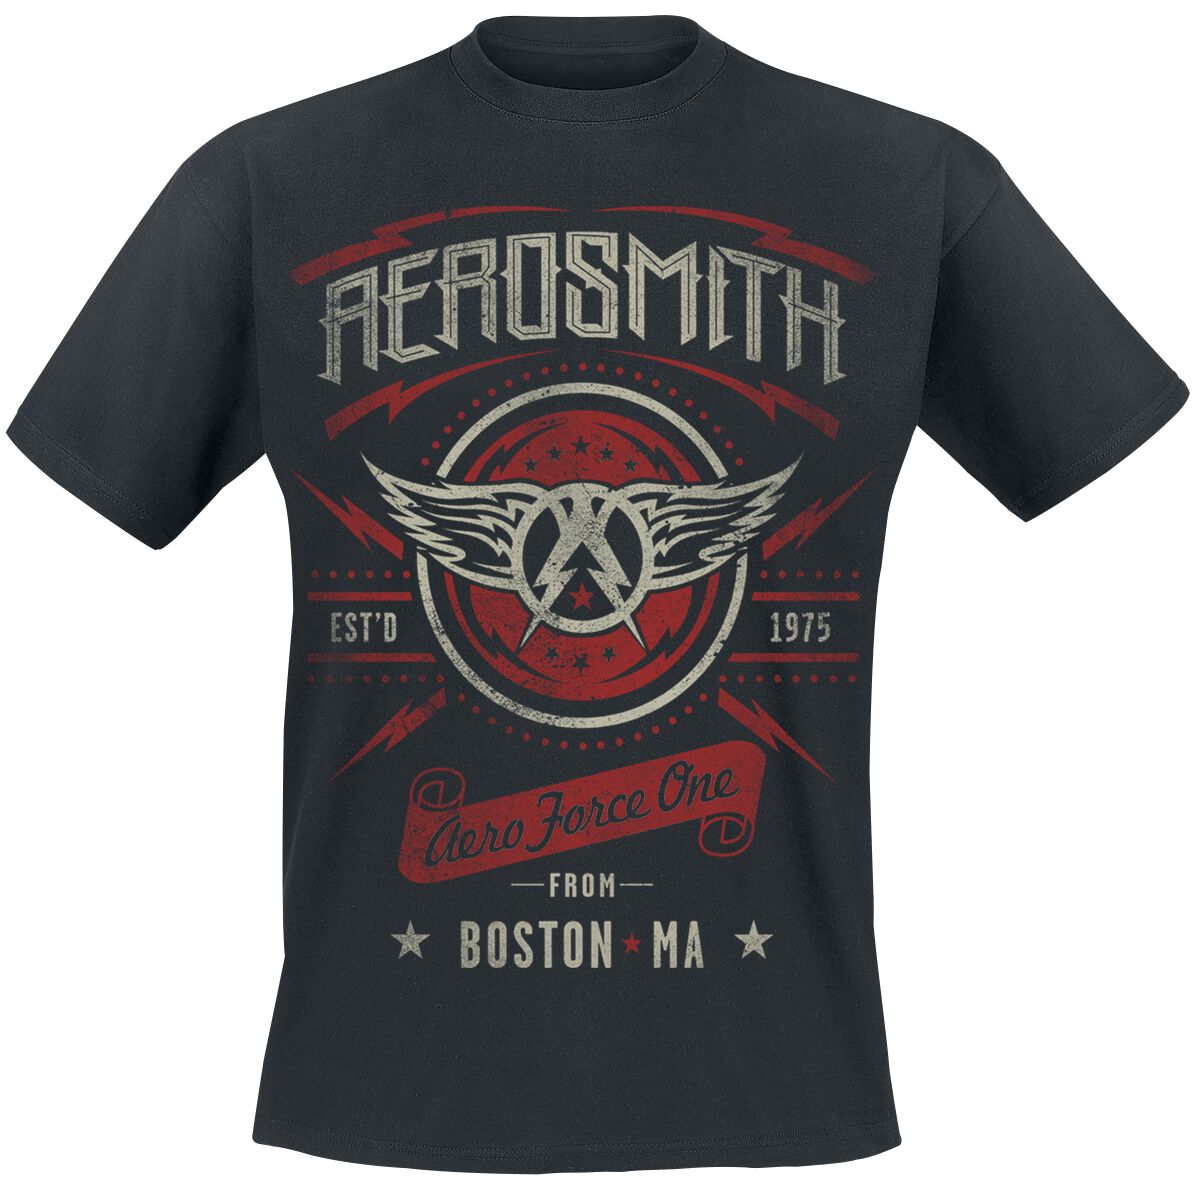 Image of Aerosmith Aero Force One T-Shirt schwarz